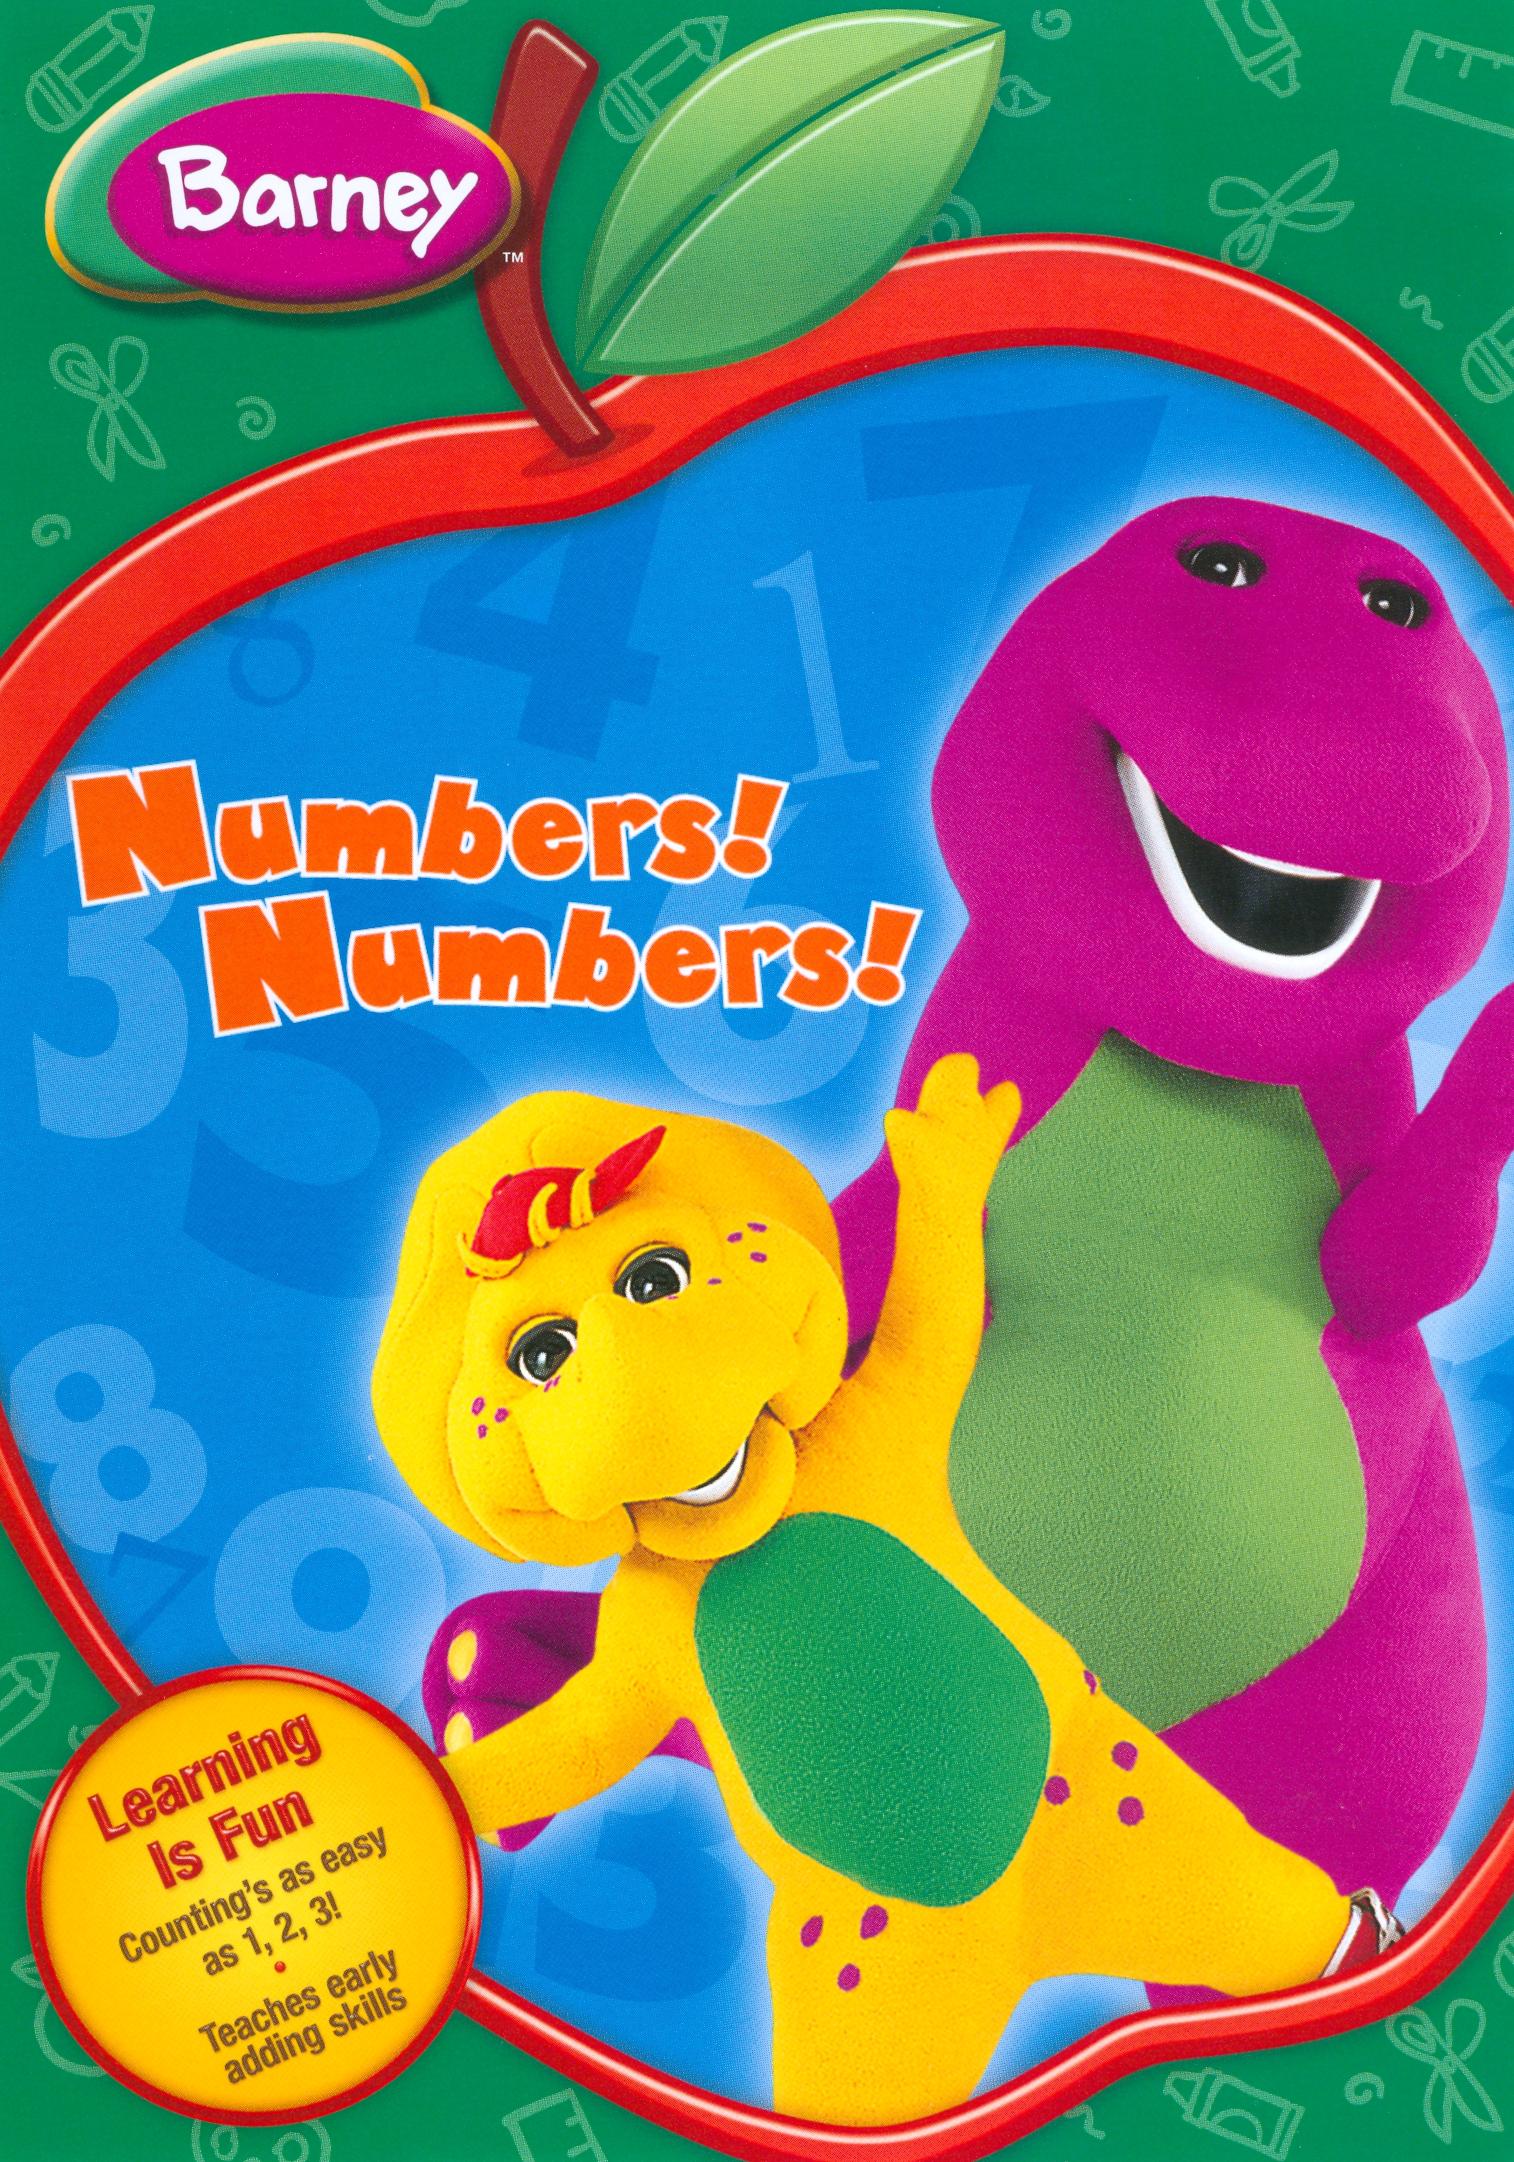 Best Buy: Barney: Numbers! Numbers! [Back to School Packaging] [DVD]